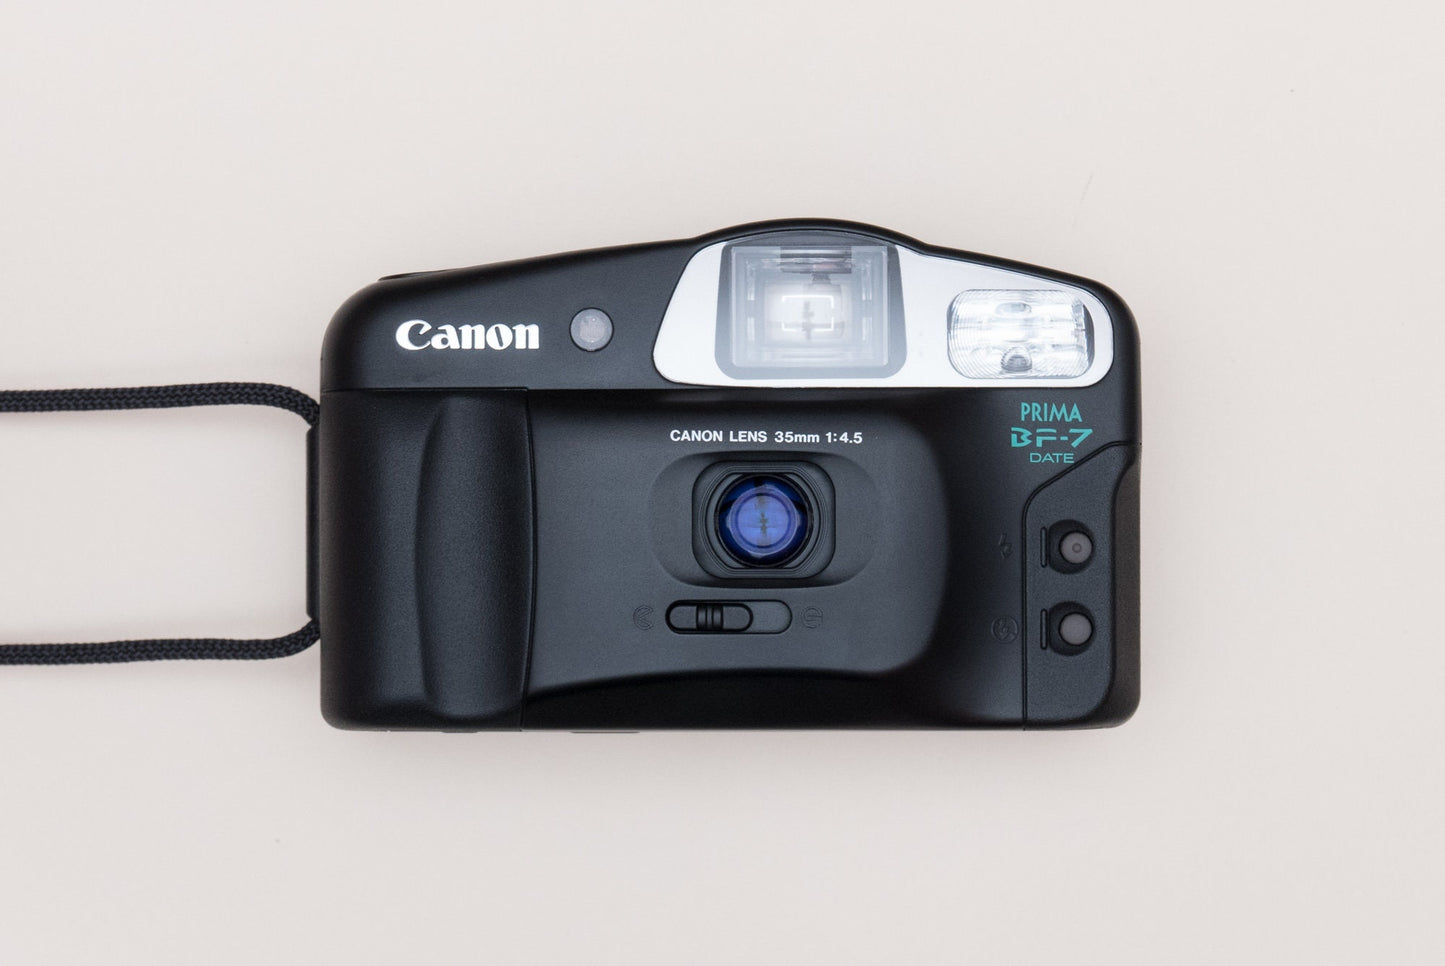 Canon Prima BF-7 Compact 35mm Film Camera